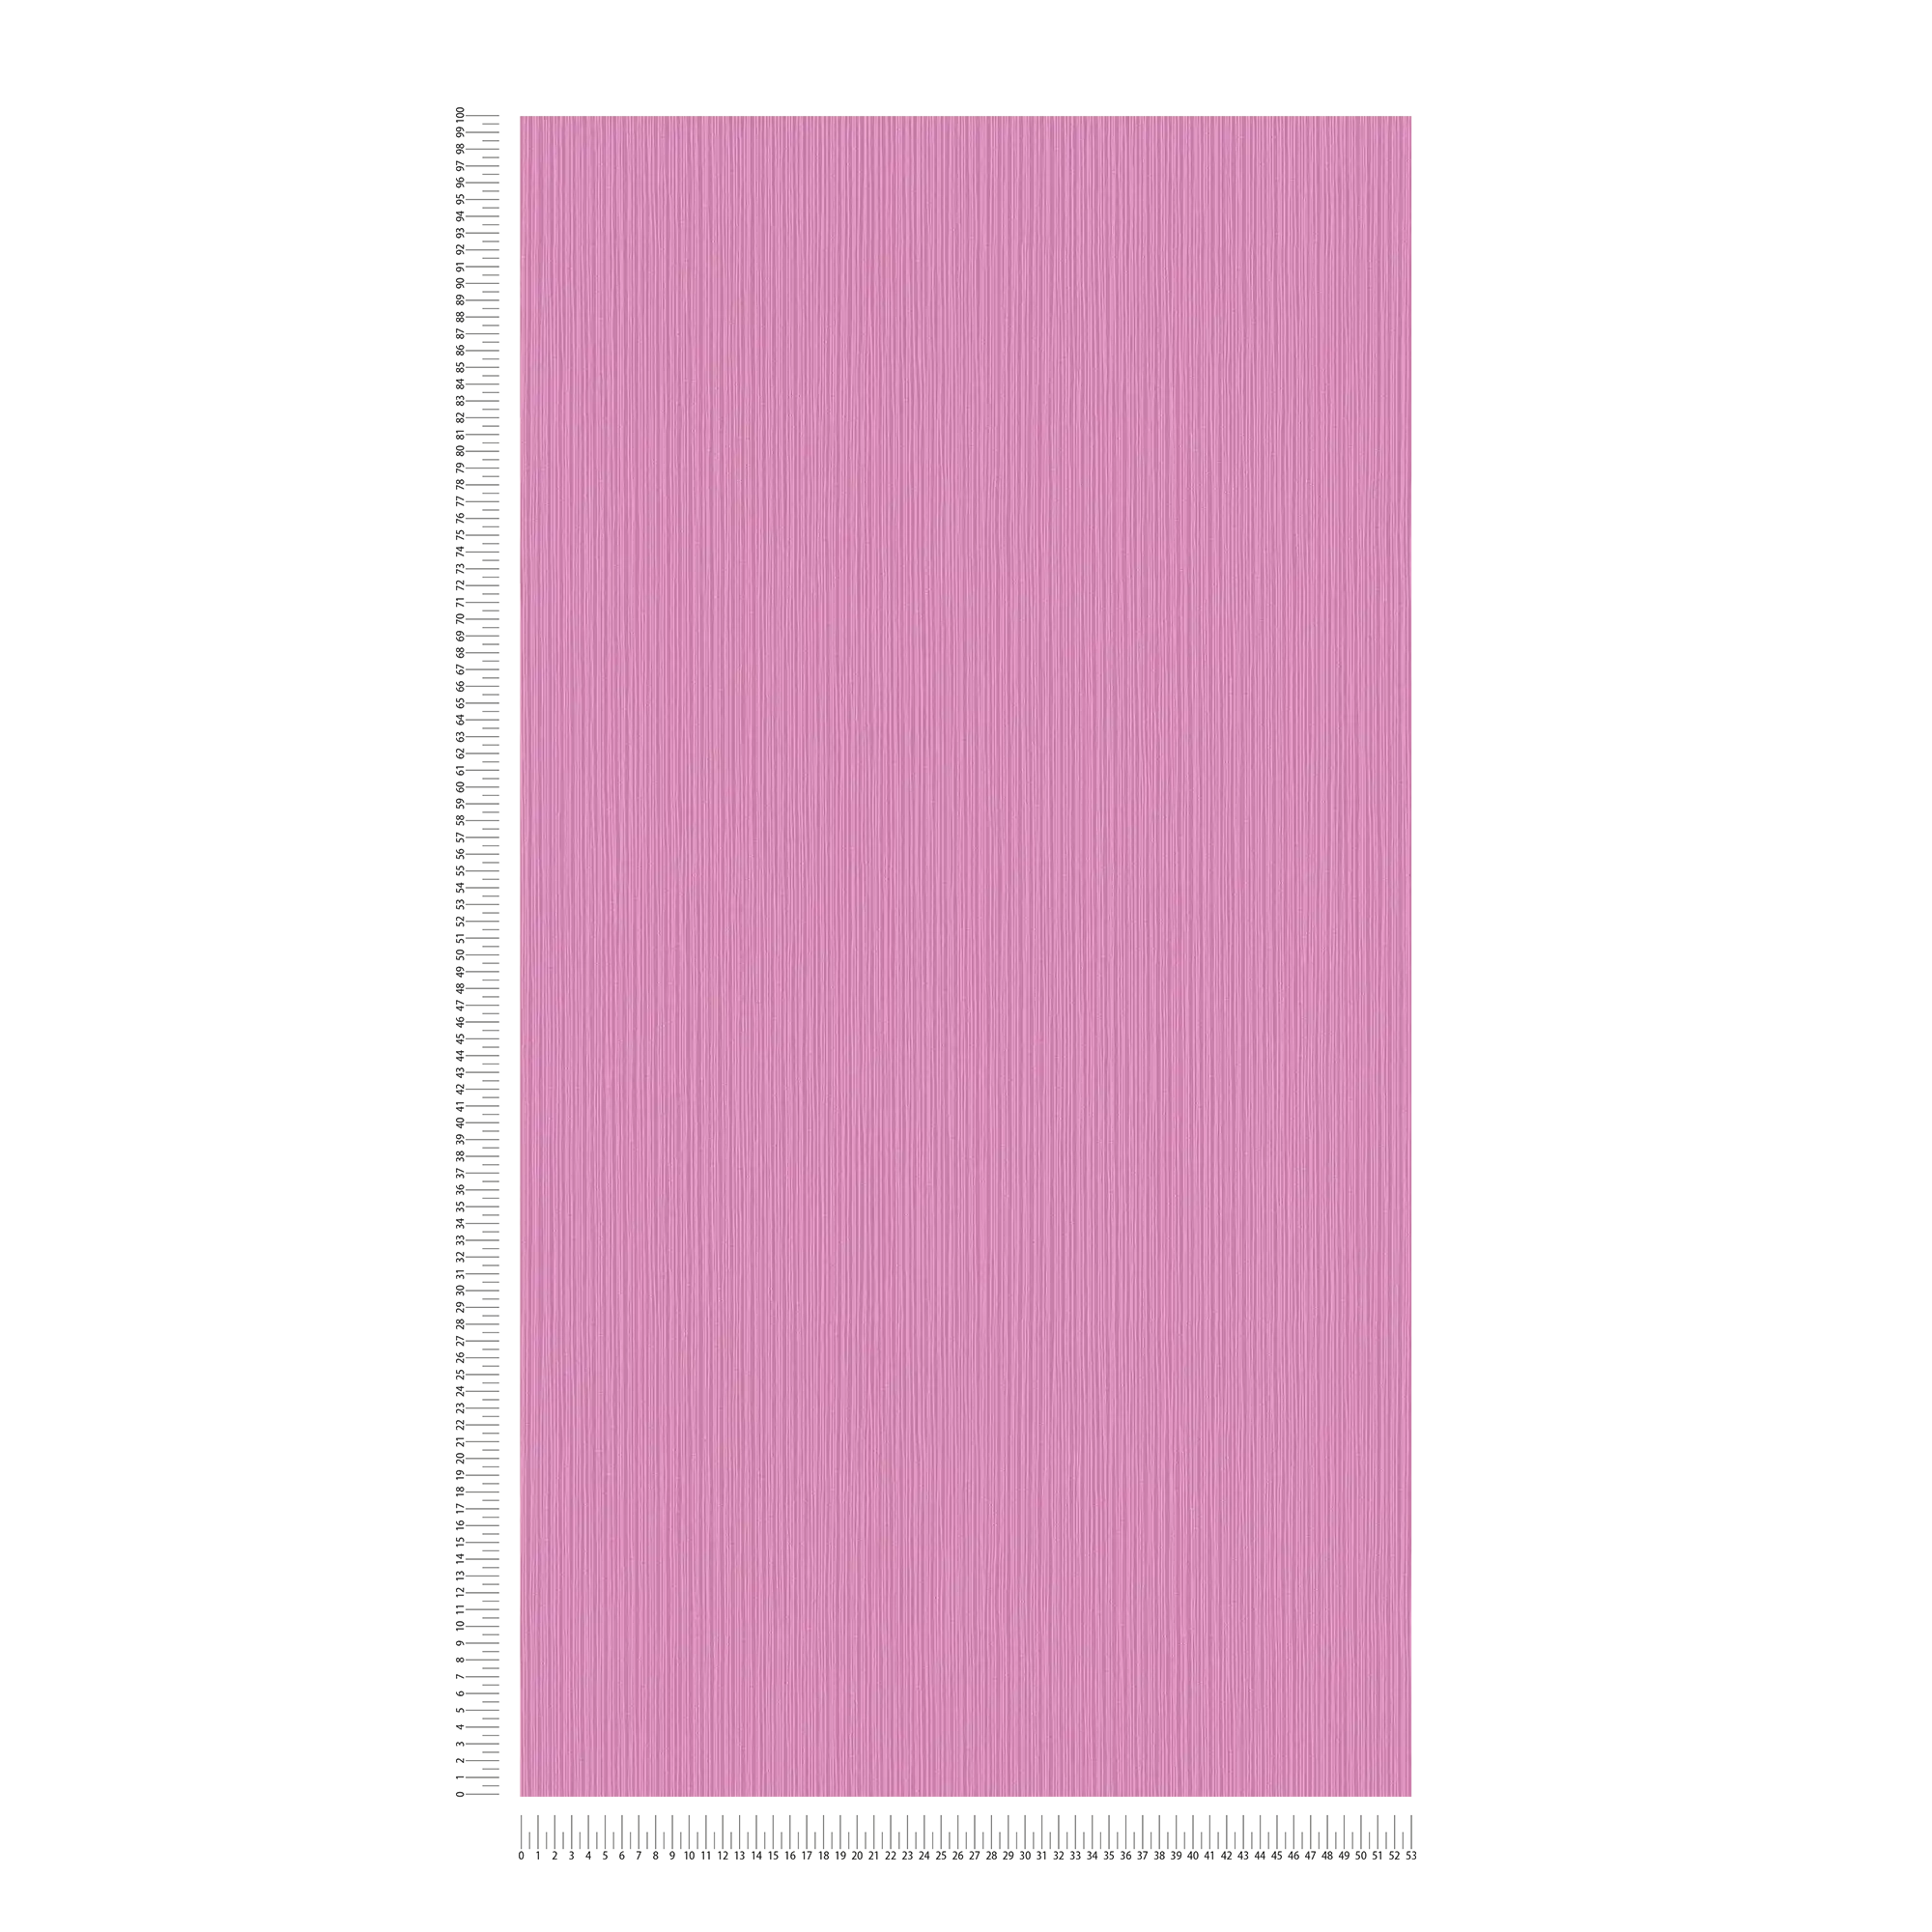             Behang violet met lijnpatroon & structuurontwerp
        